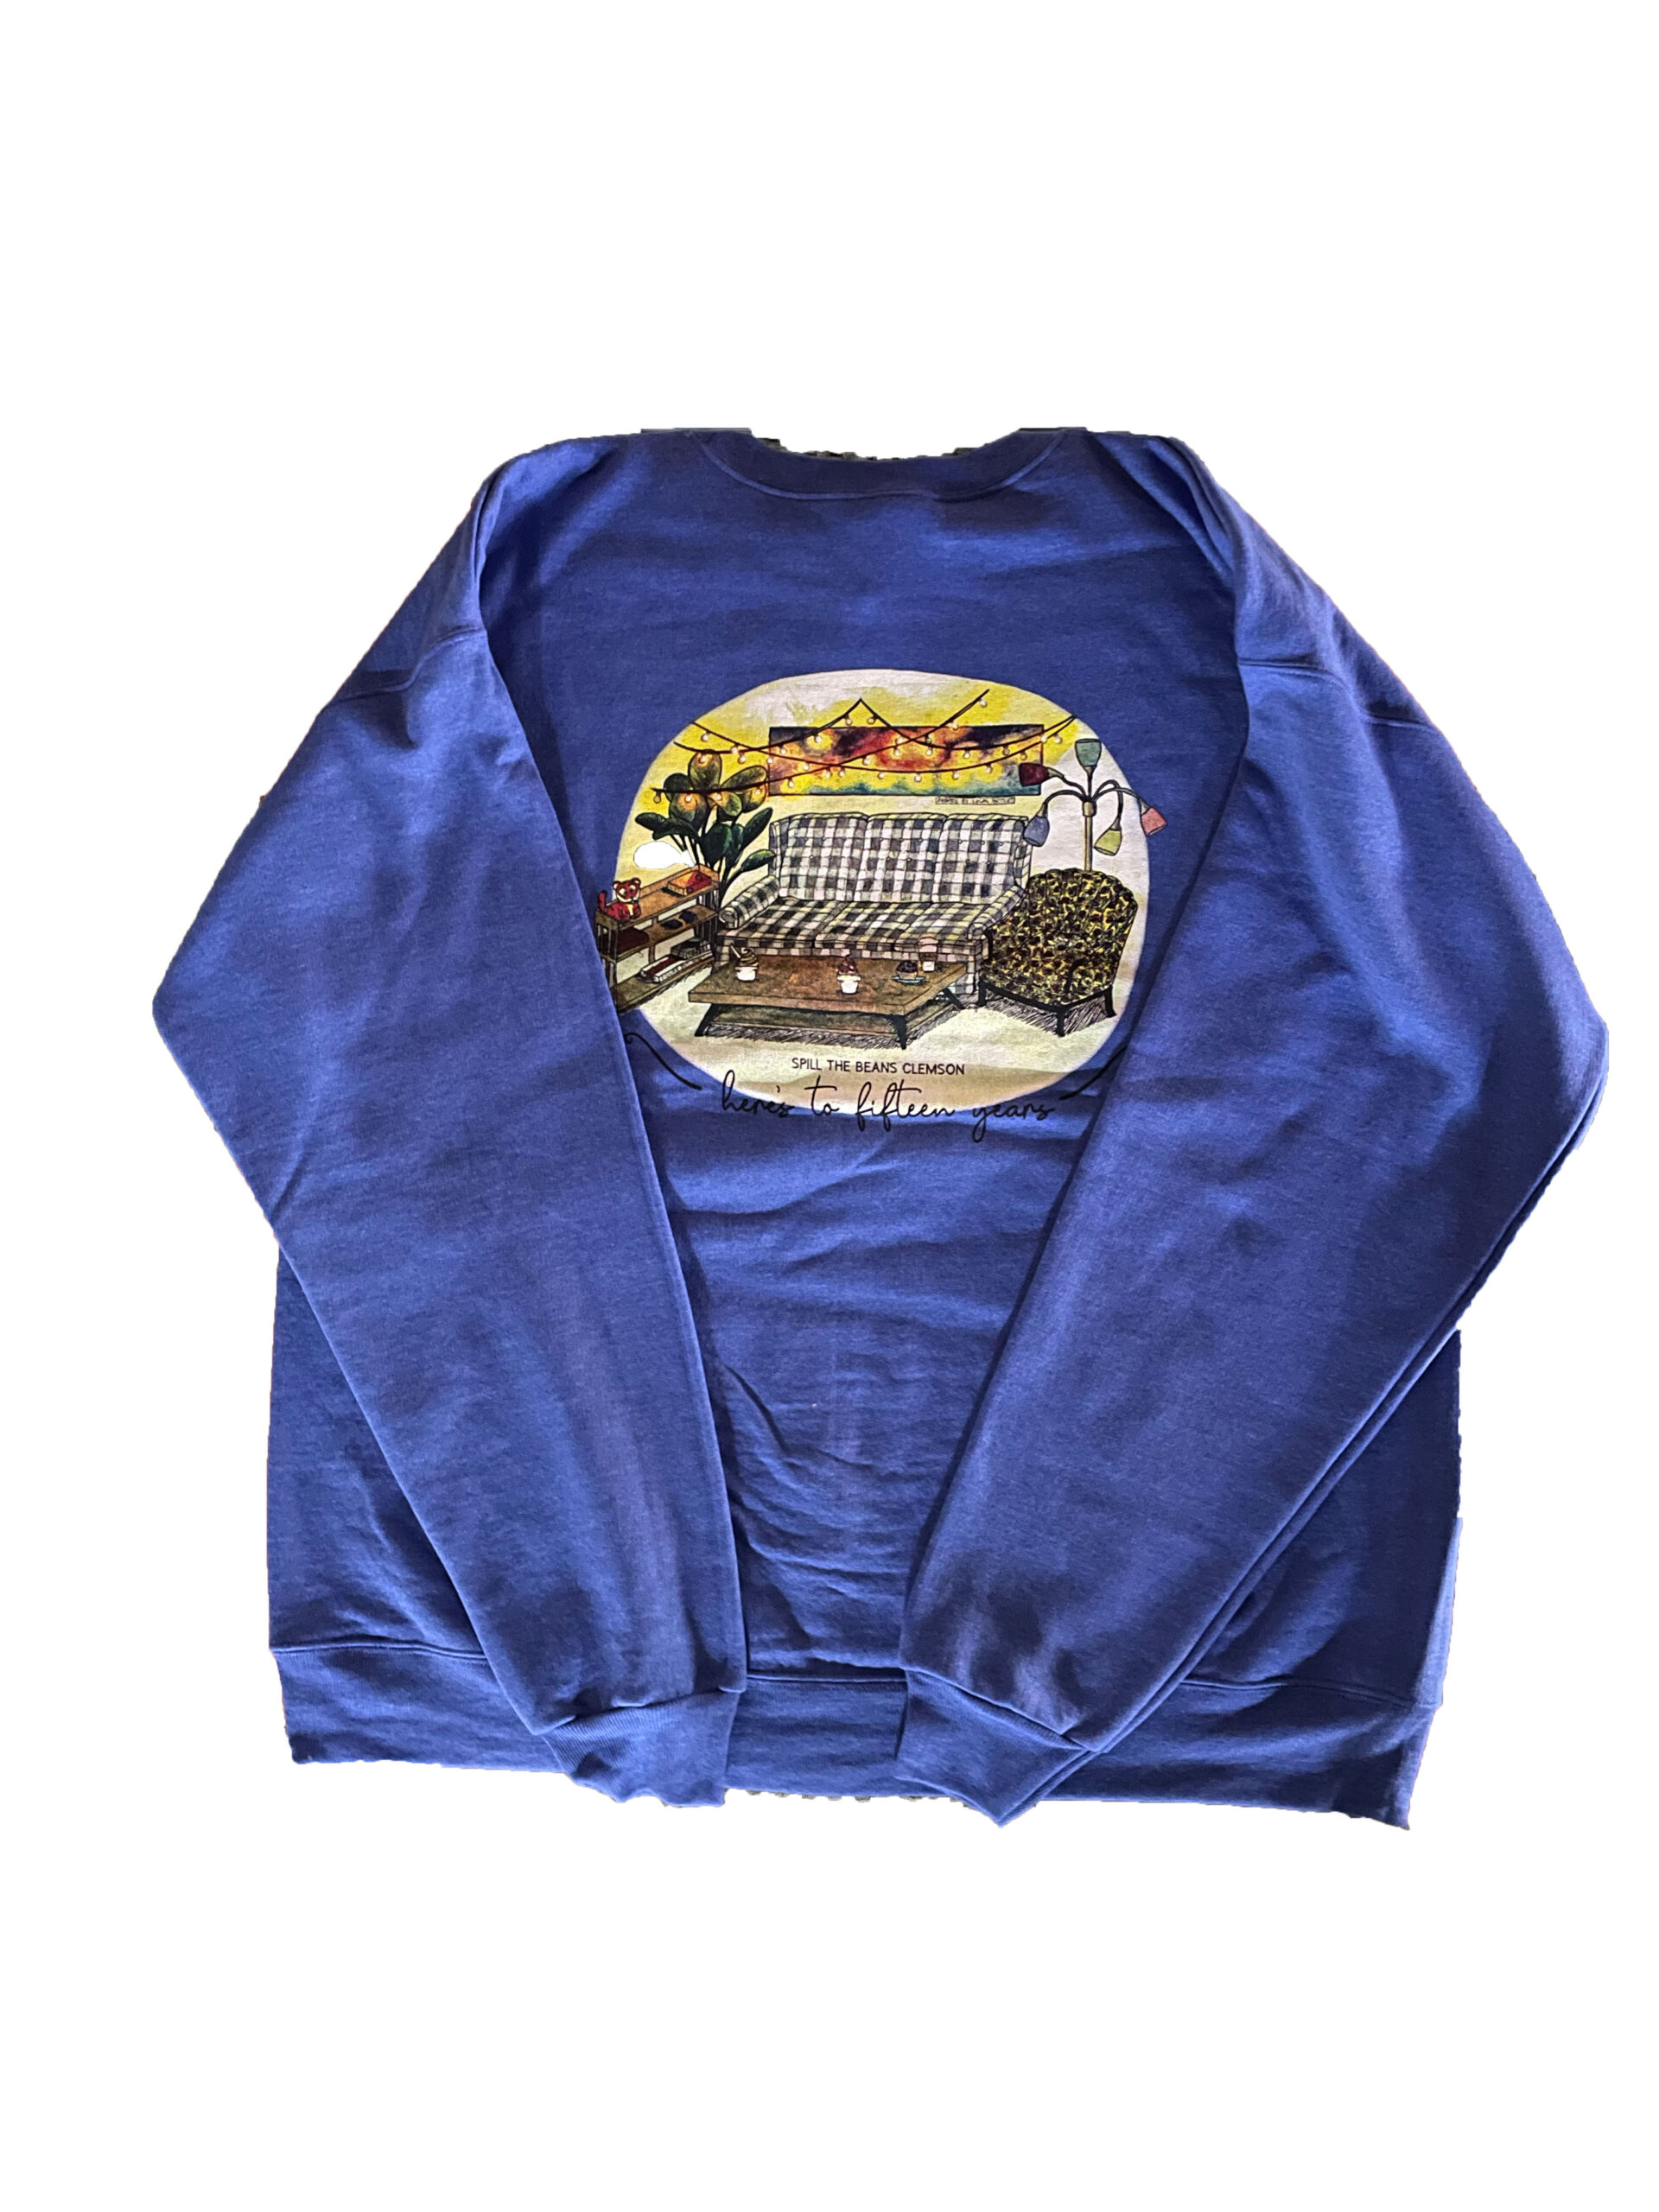 15th Year Anniversary Sweatshirt - Back (Merchandise)